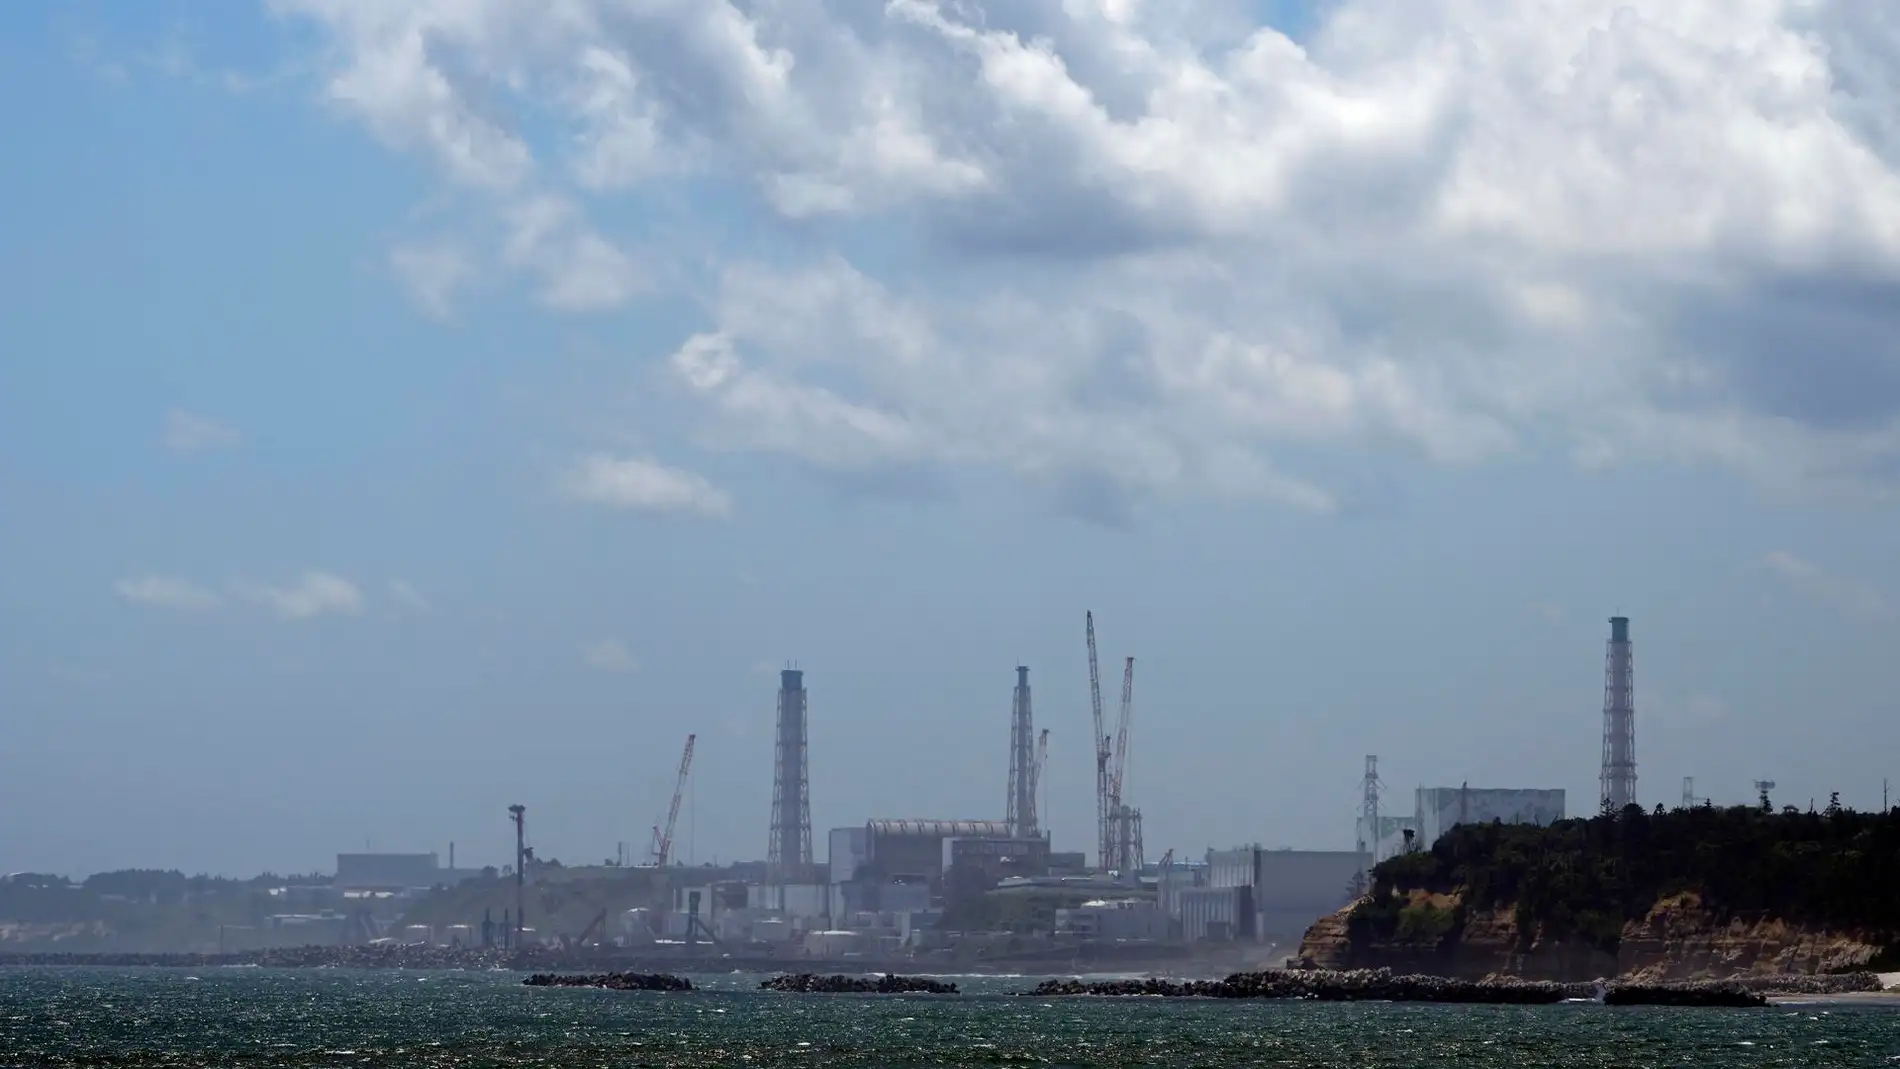 La central nuclear de Fukushima Daiichi se ve desde el puerto pesquero de Ukedo, en Namie, Prefectura de Fukushima, Japón